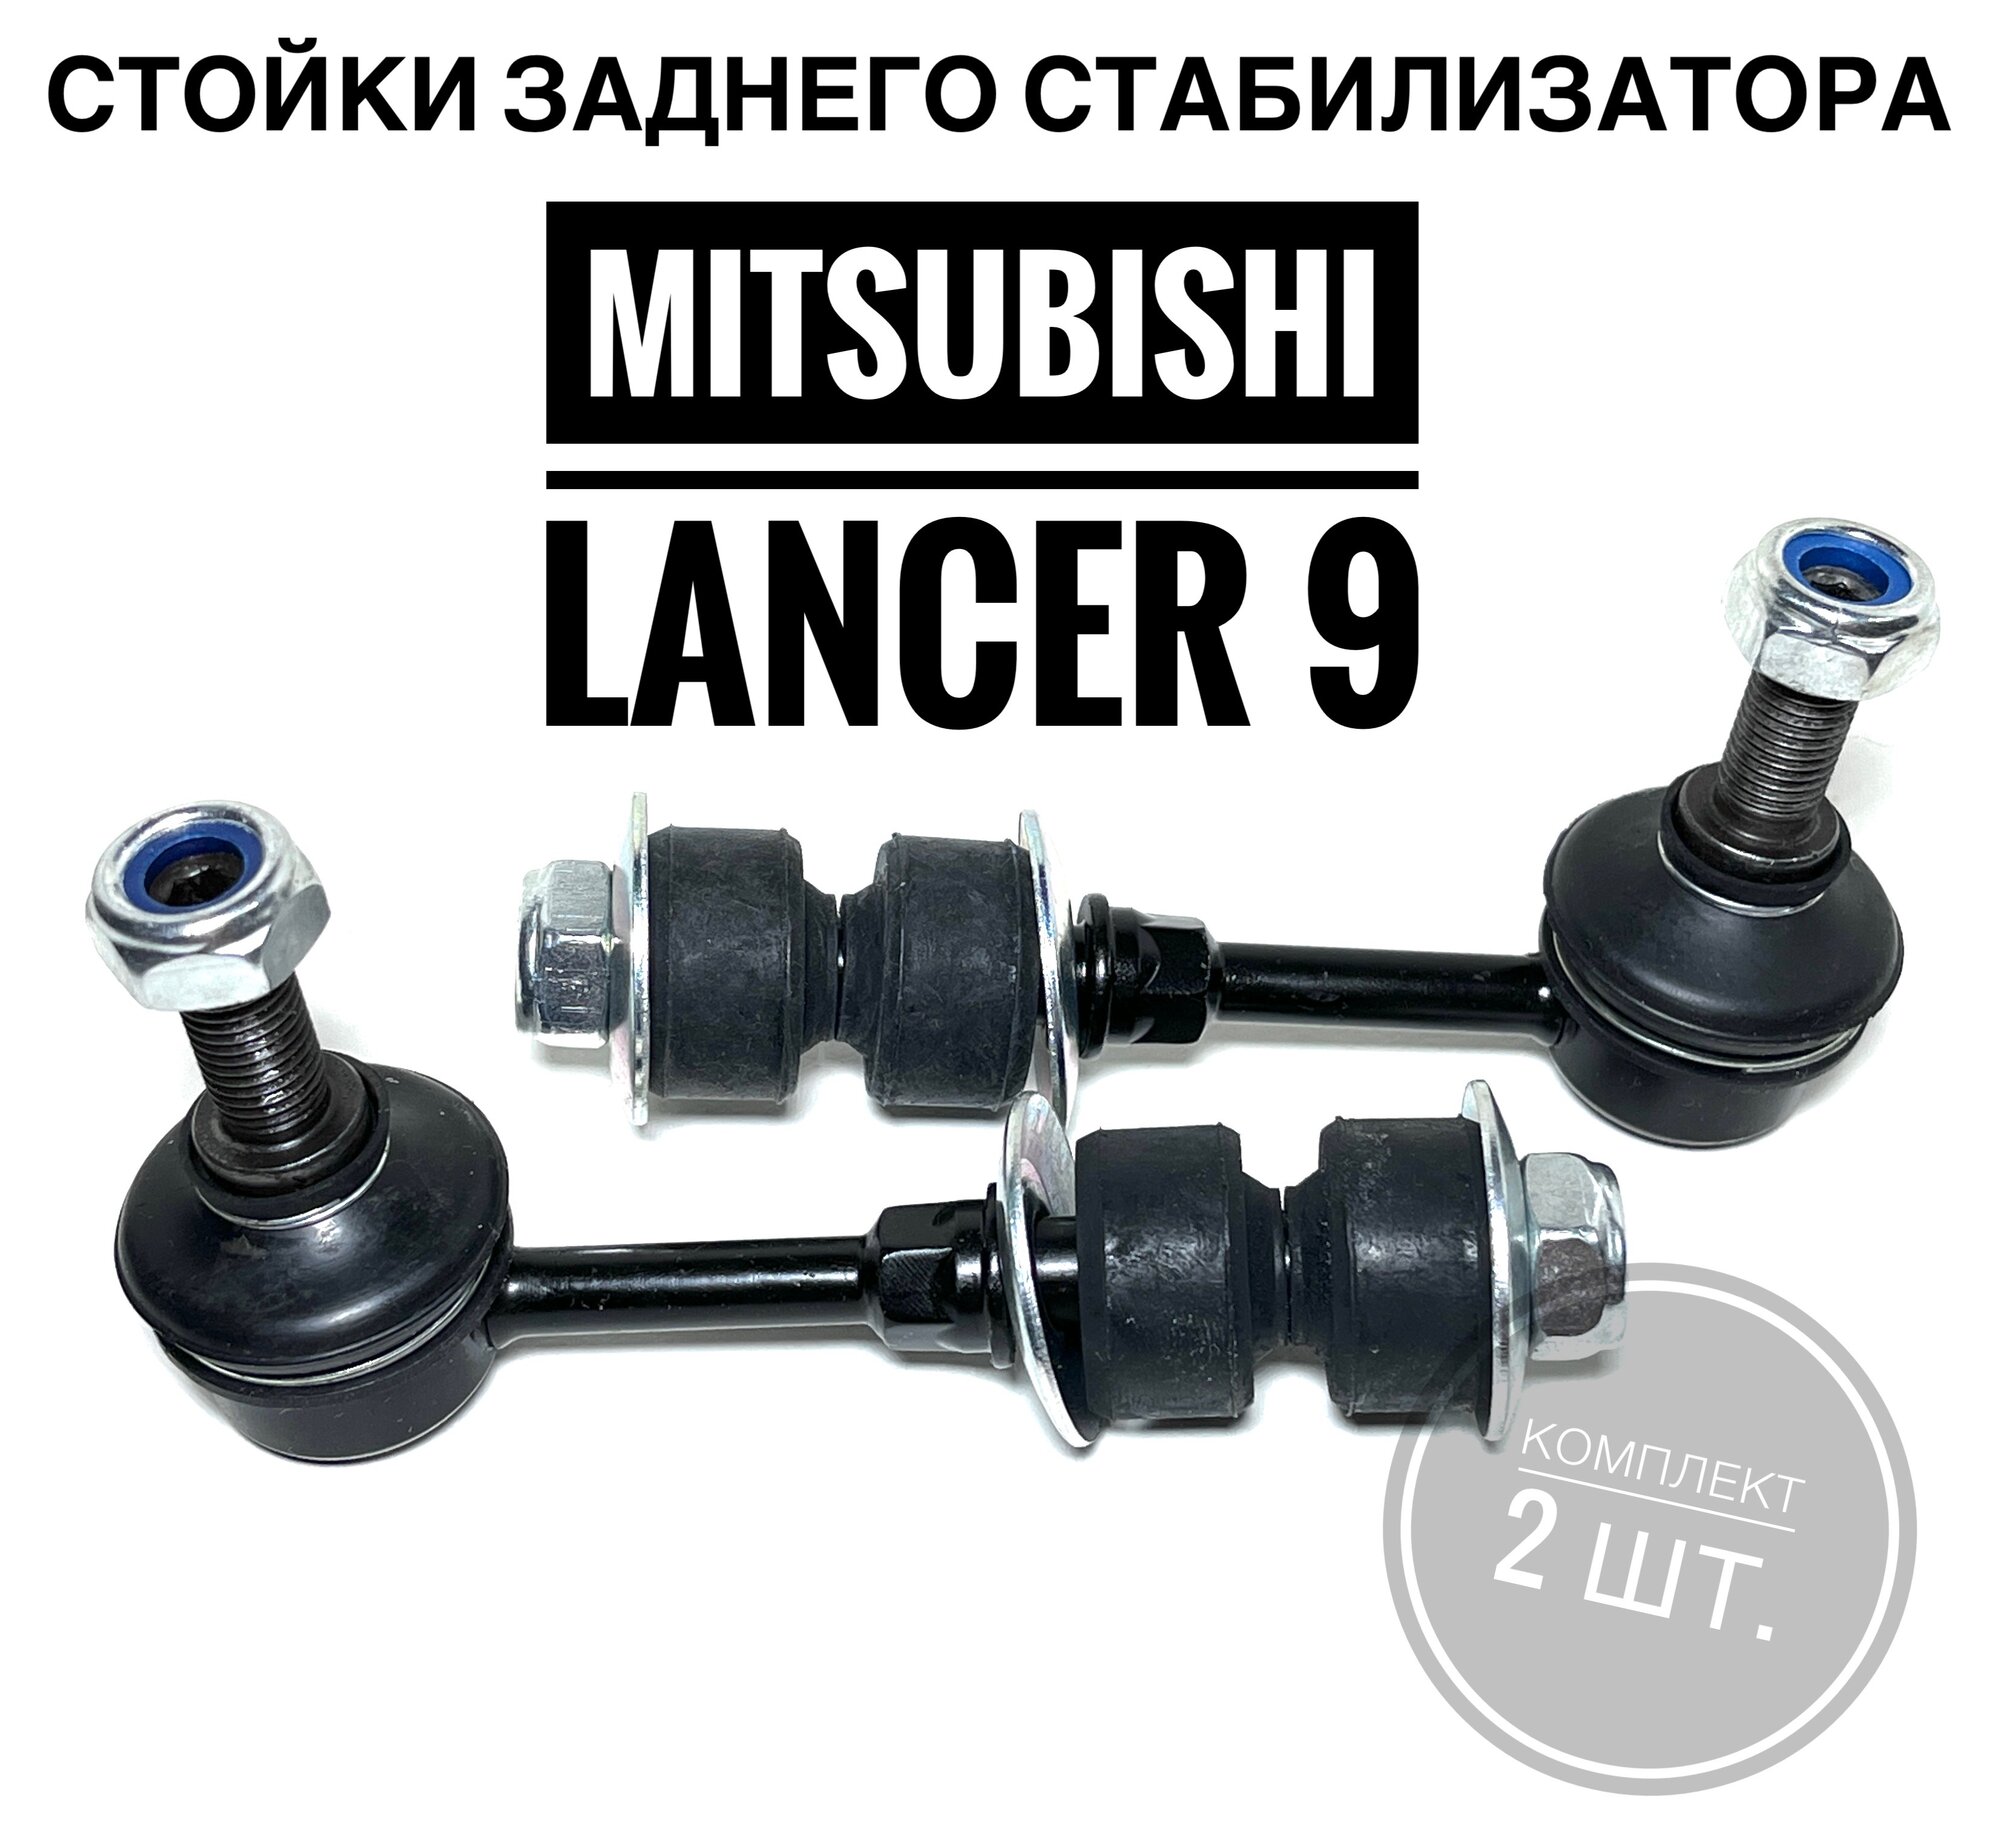 Стойки заднего стабилизатора для Митсубиши Лансер 9 (Mitsubishi Lancer IX 2003 - 2010) комплект 2шт. Just Drive